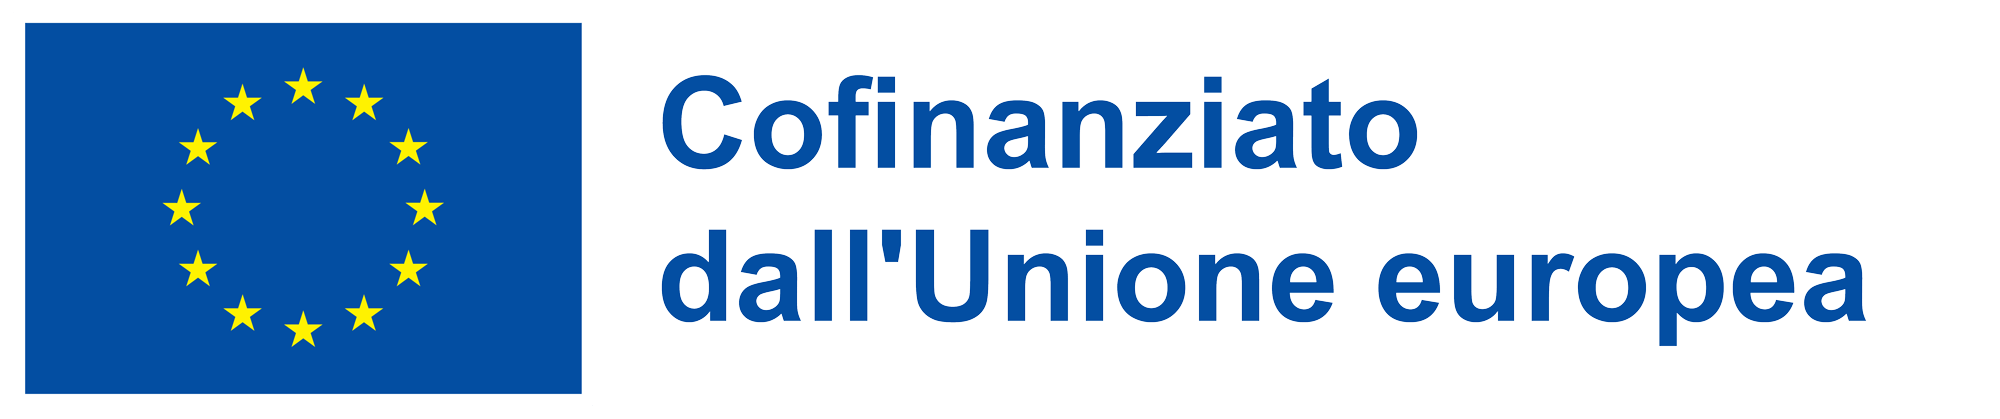 Logo Unione Europea - Fondi Strutturali e investimento europei